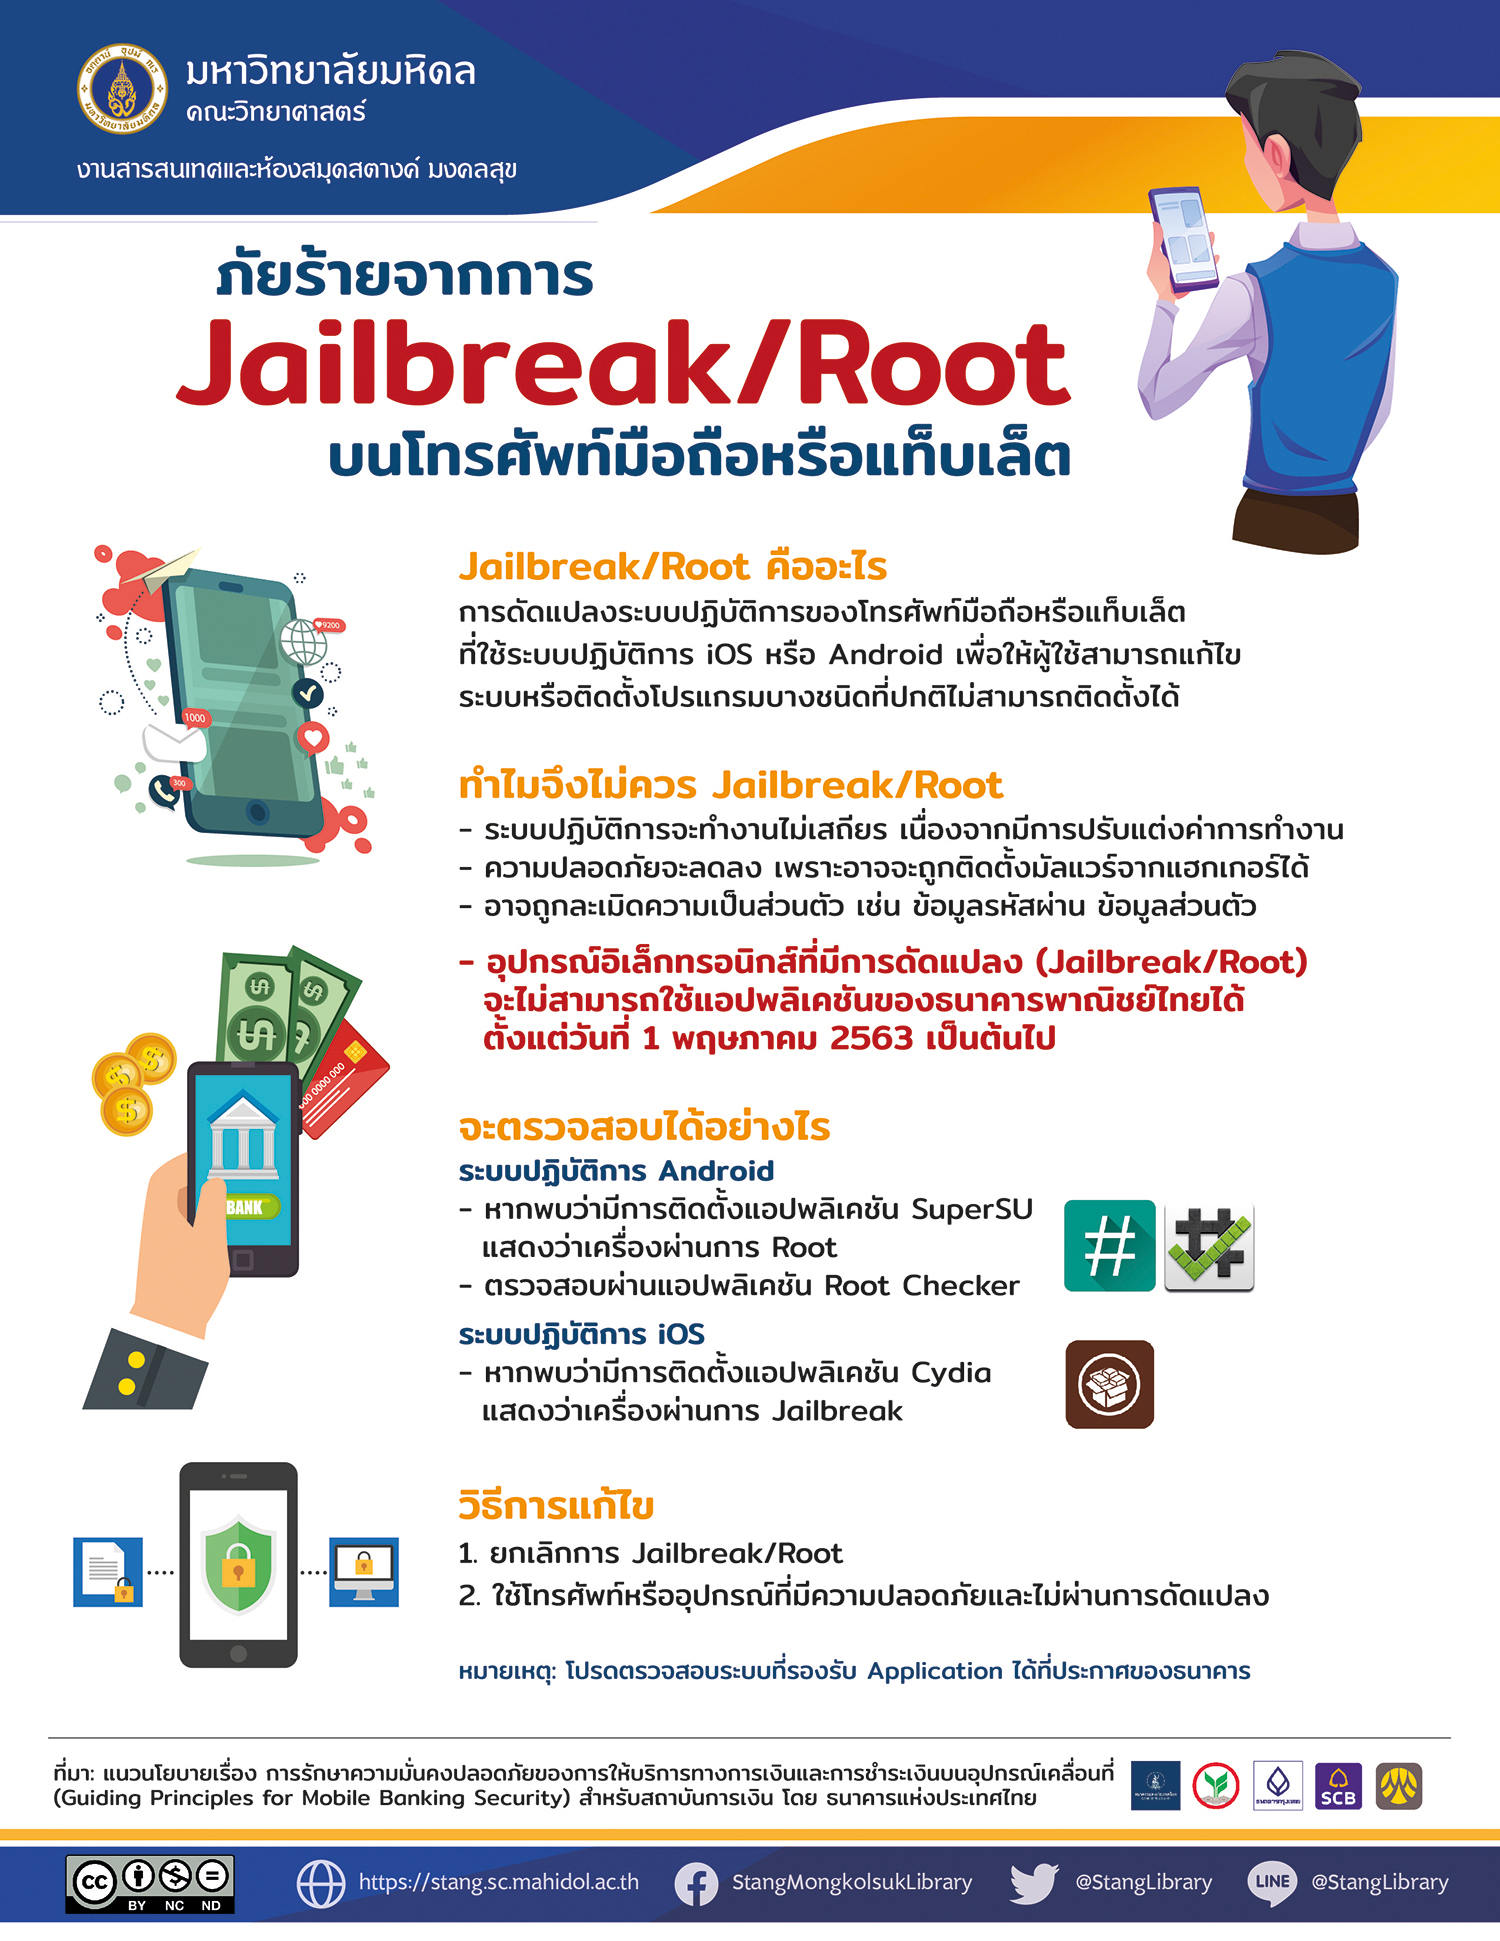 ภัยร้ายจากการ Jailbreak/Root บนโทรศัพท์มือถือหรือแท็บเล็ต